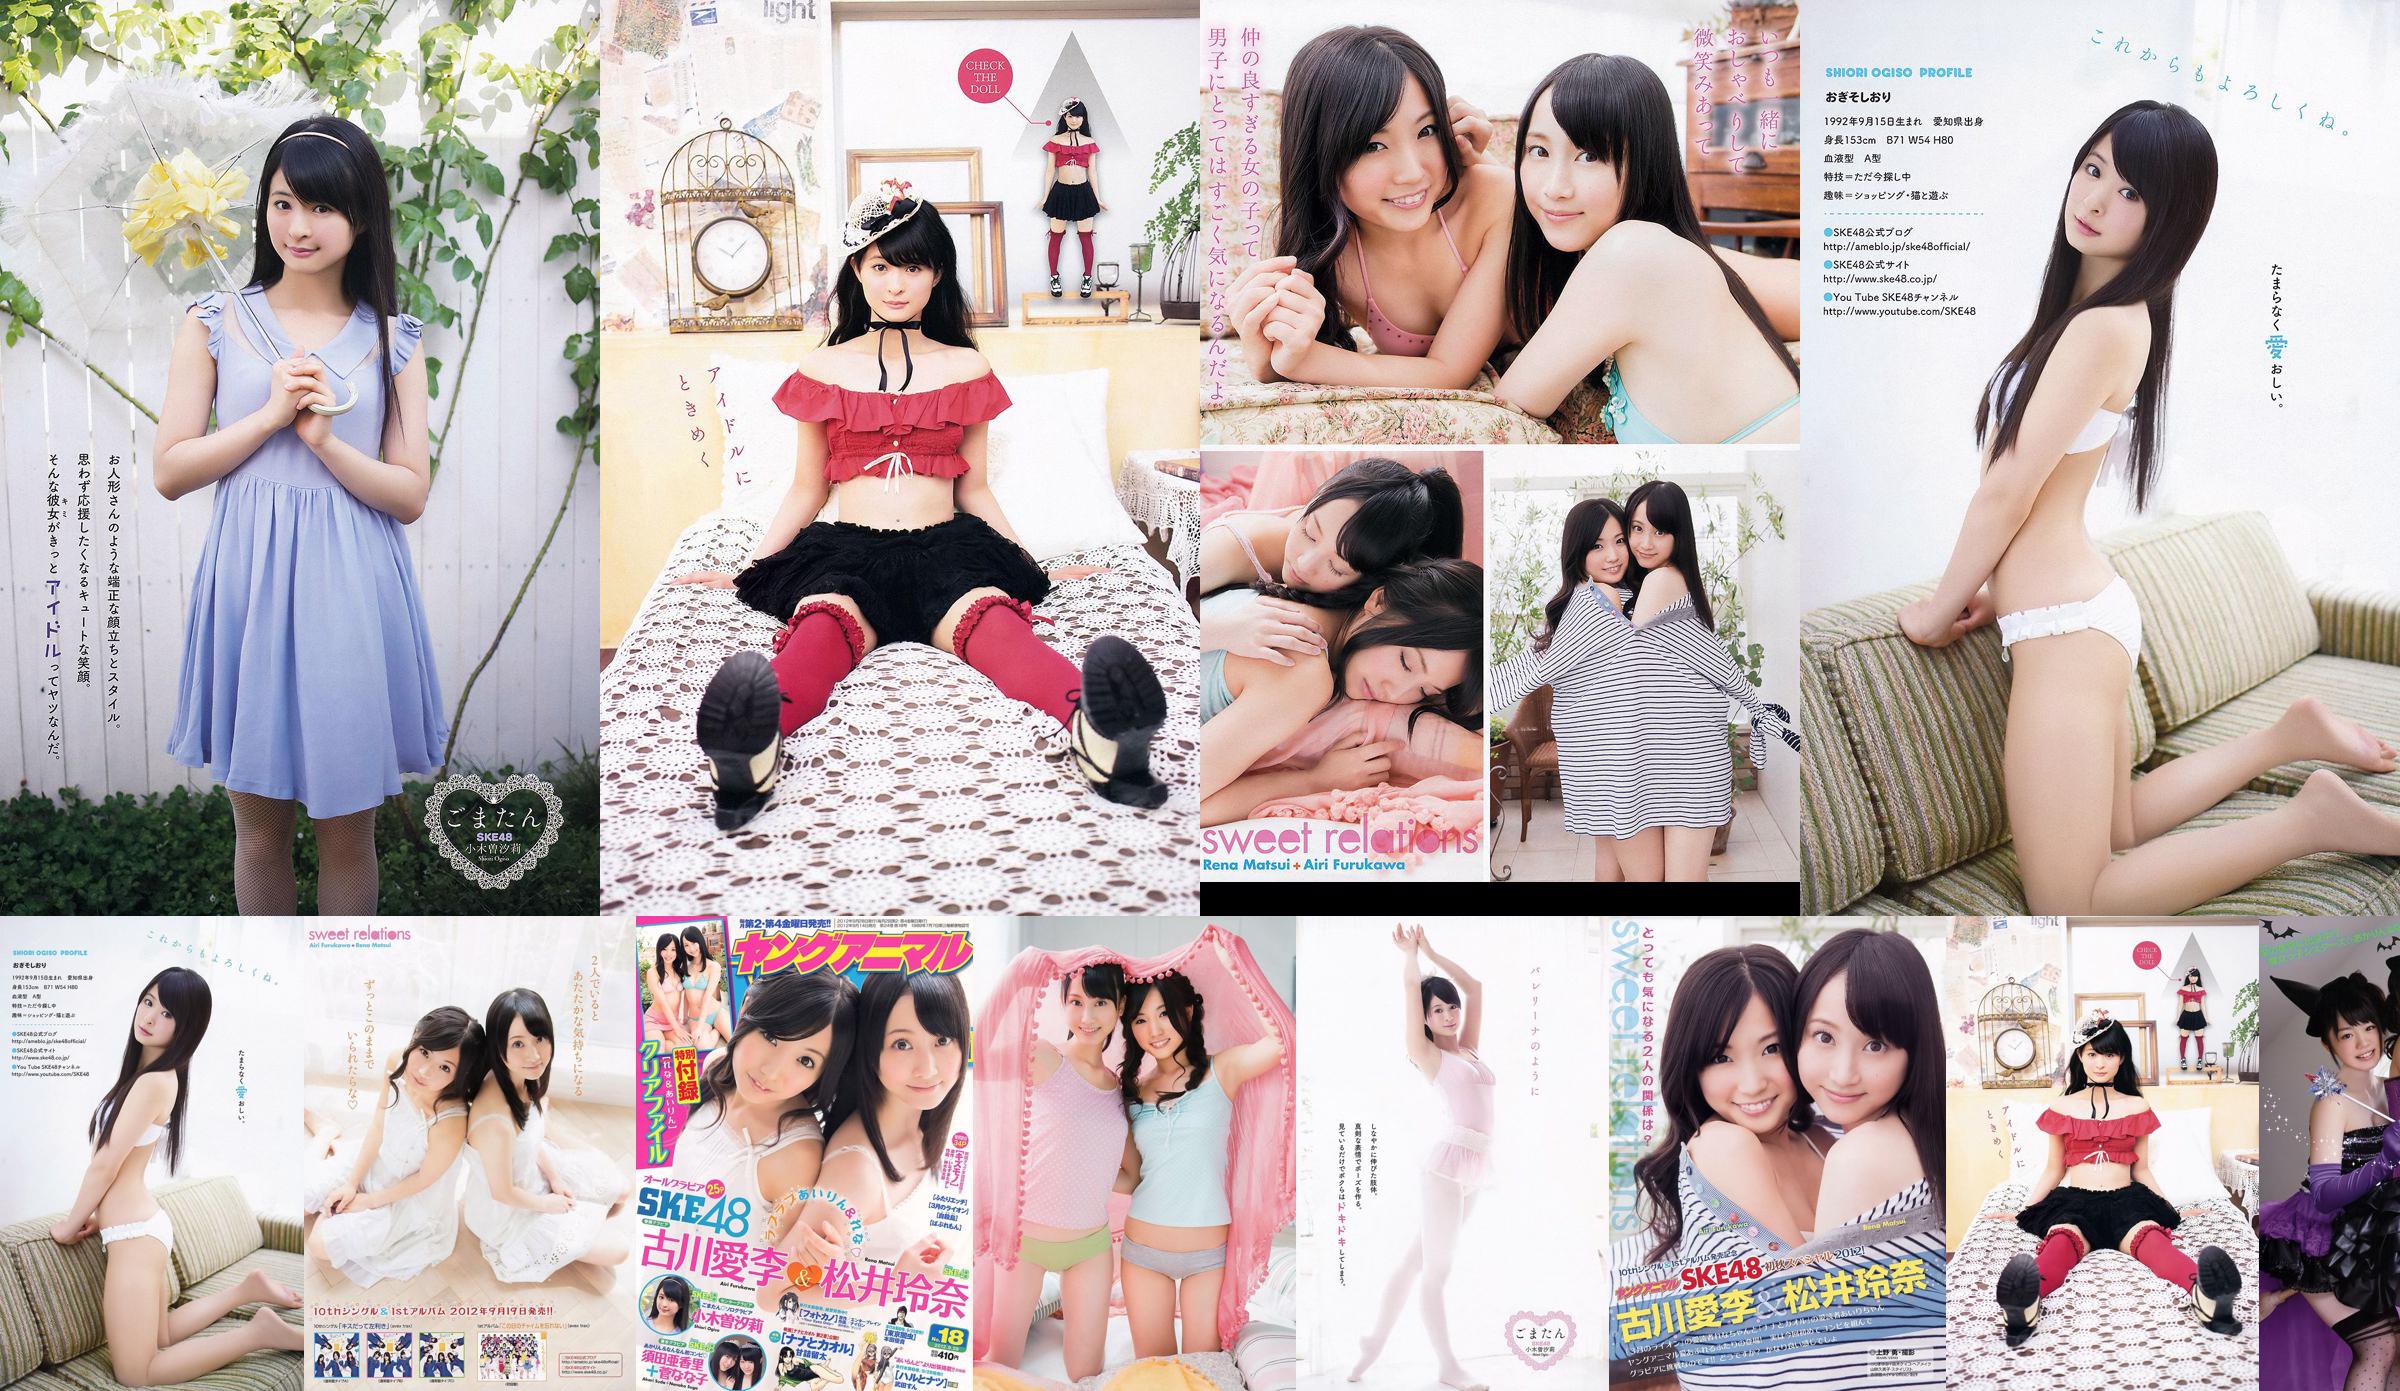 Ai Li Furukawa, Rena Matsui, Sasa Ogi, Aikari Suda [Animal jovem] 2012 No.18 Photo Magazine No.6c99bf Página 1